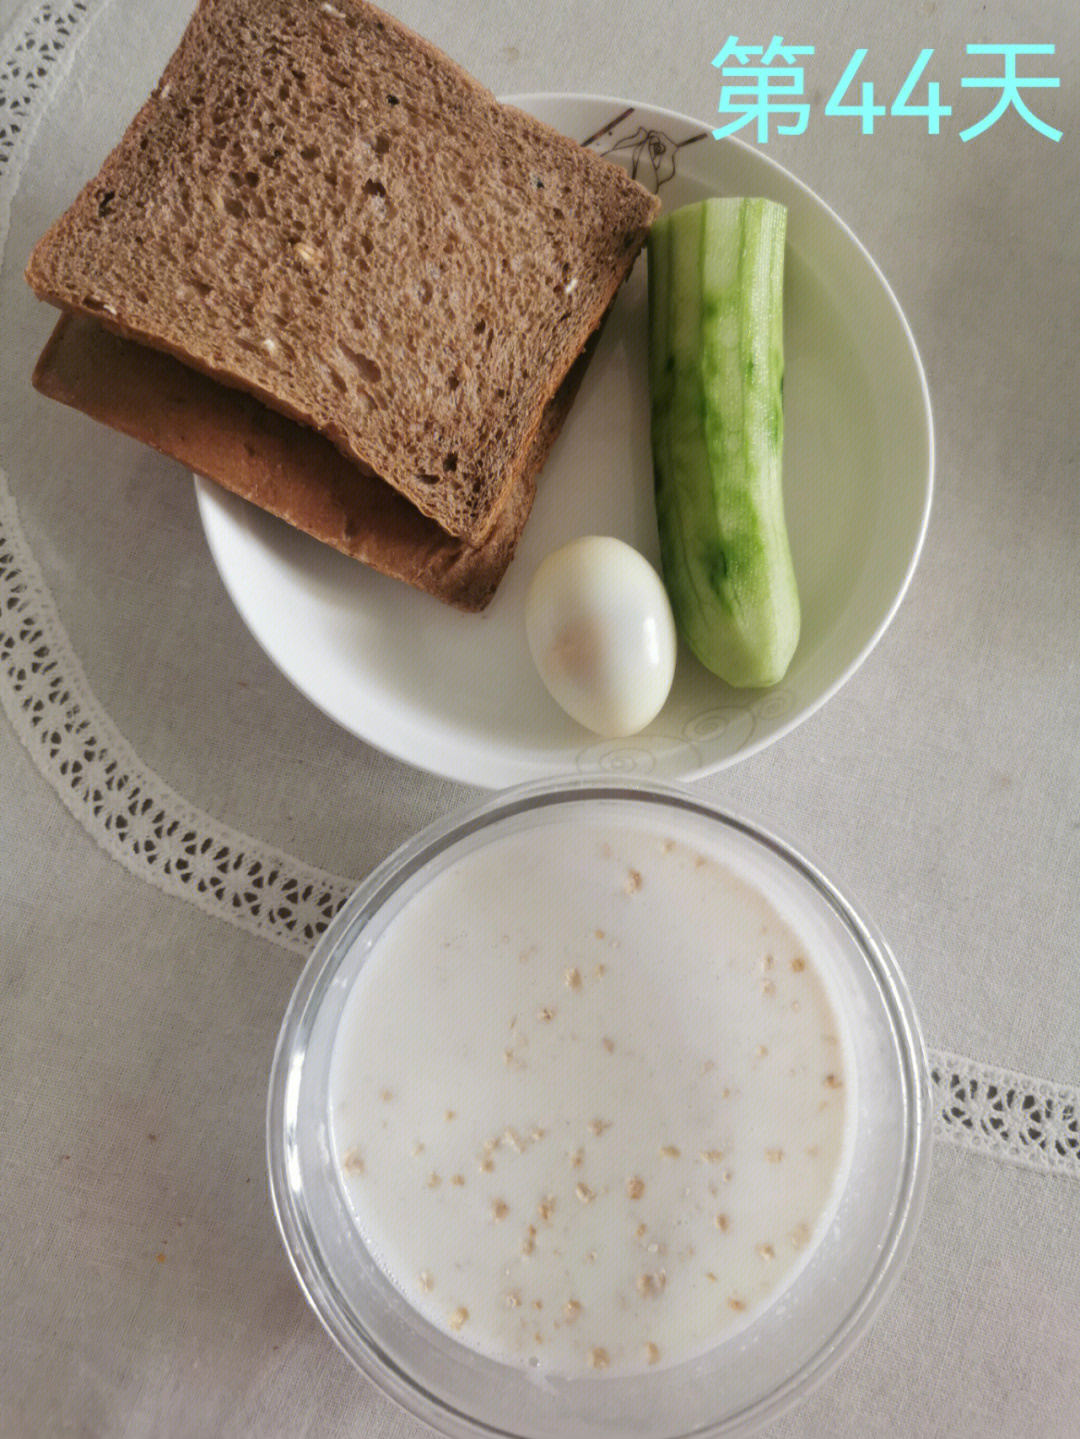 燕麦牛奶 面包 黄瓜 鸡蛋午餐:米饭 辣椒炒肉丝 韭菜炒蚬肉 黑豆芽